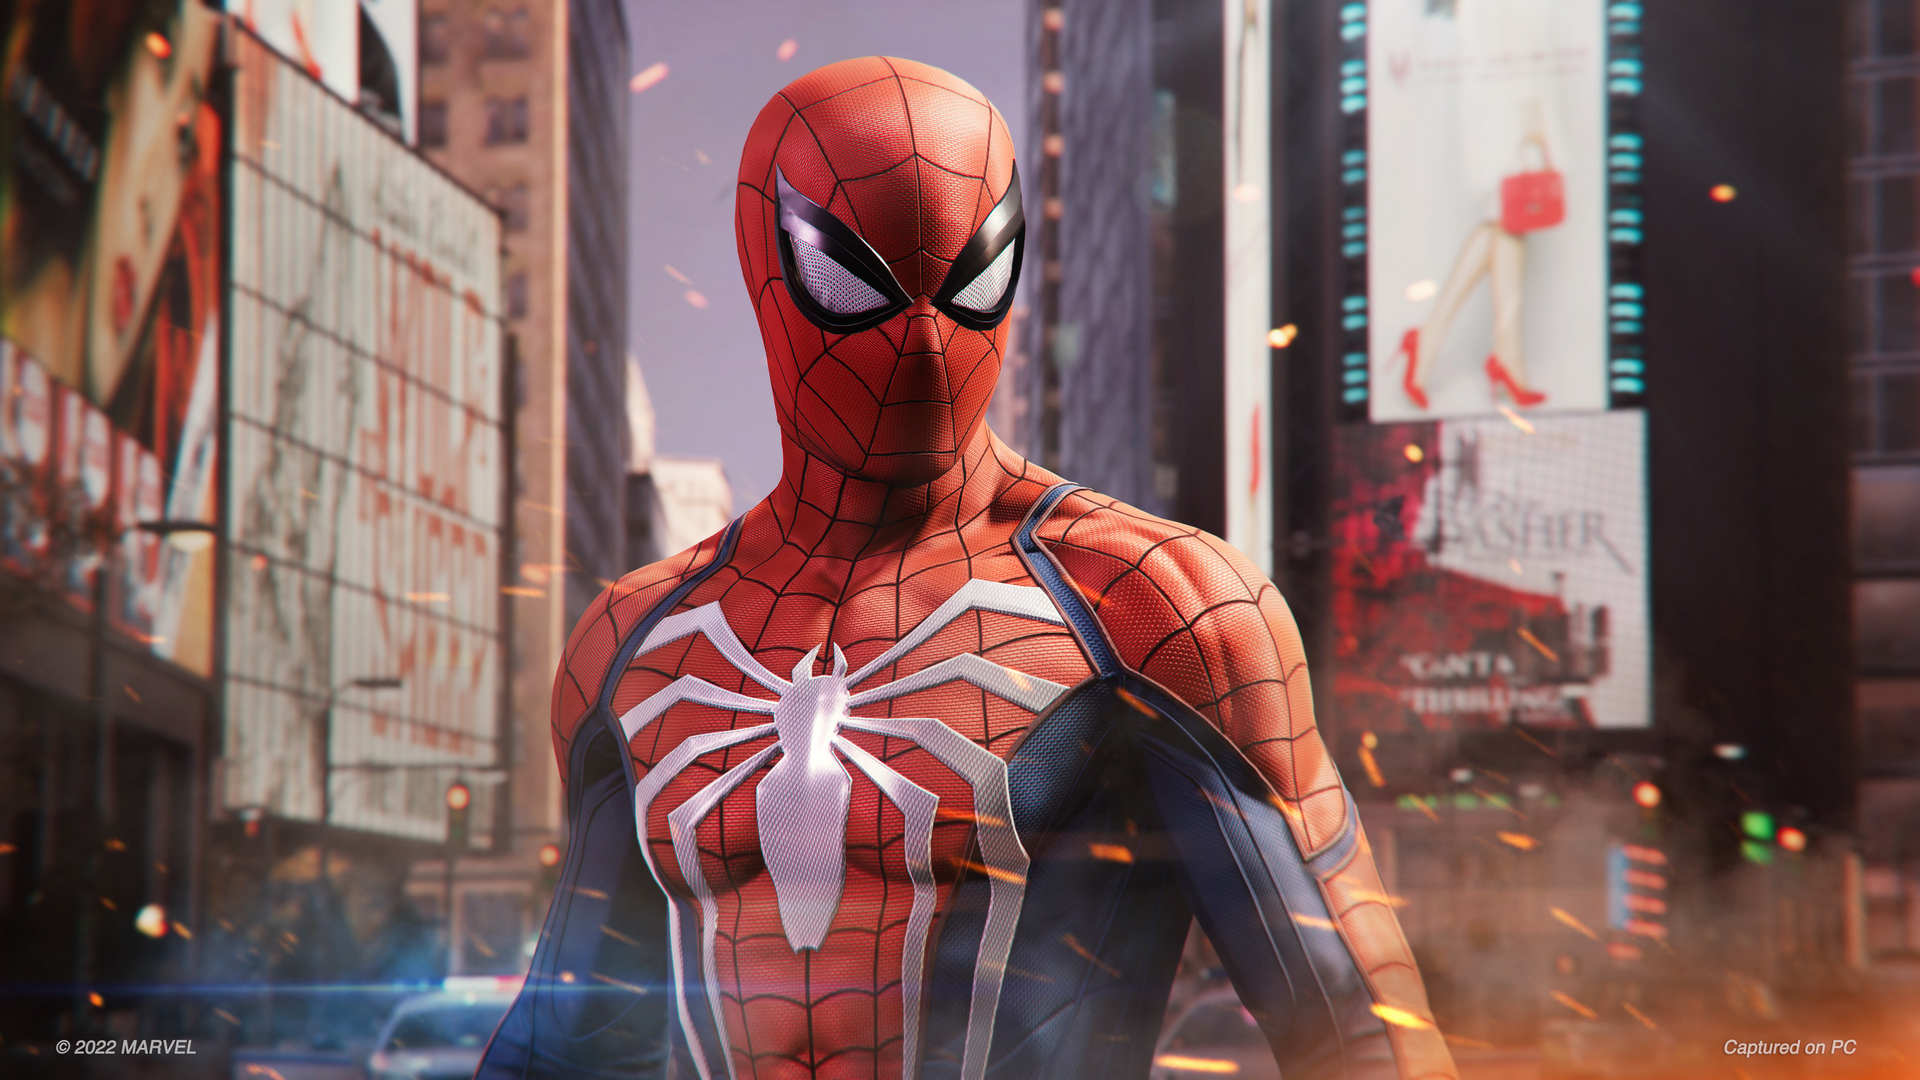 Spider-Man 2, jogo do Homem-Aranha, perdeu TUDO no The Game Awards